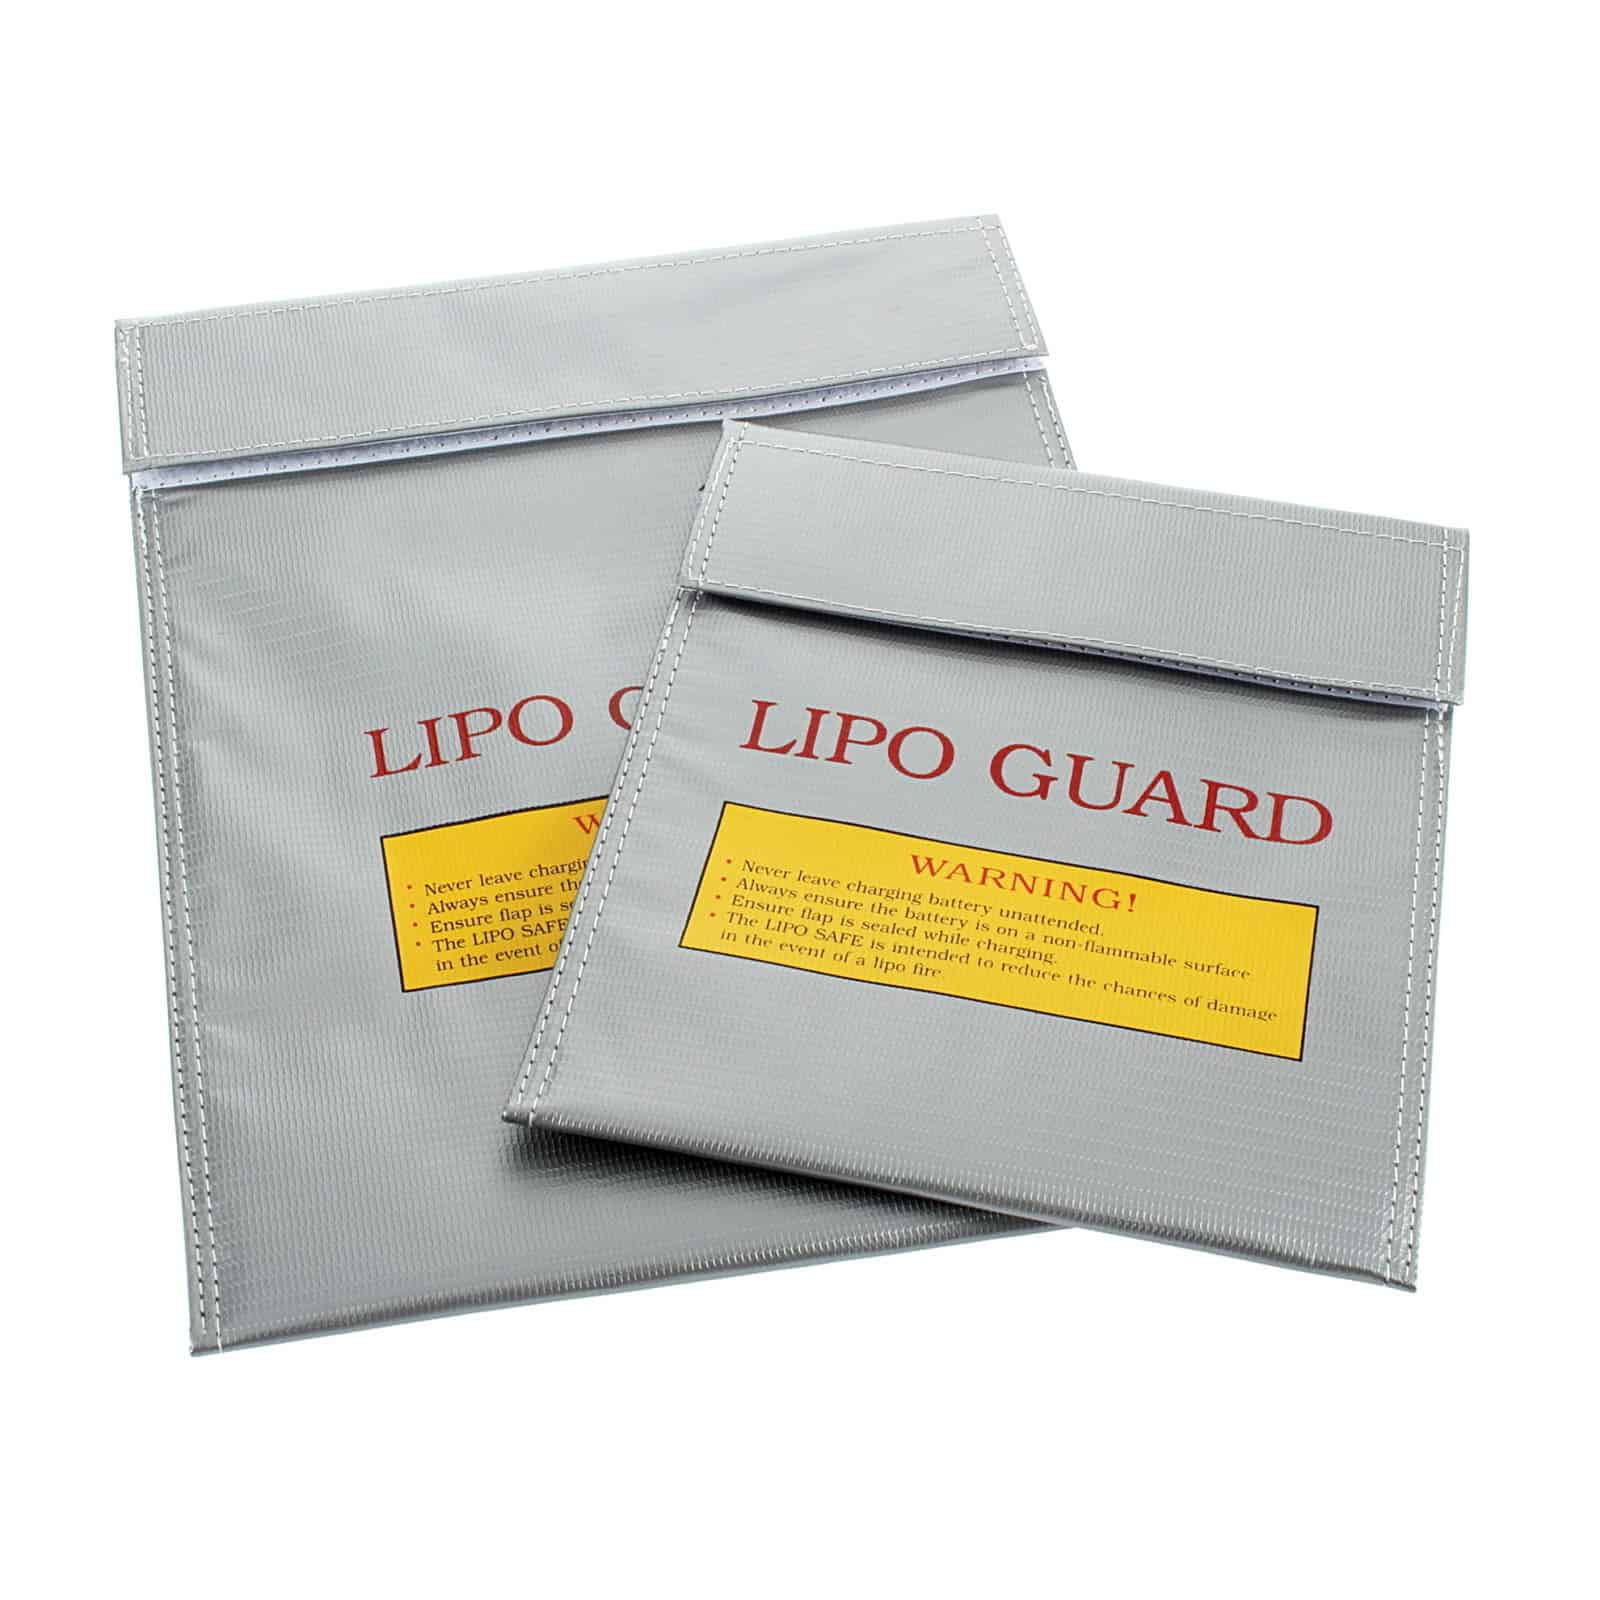 Lipo Guard für nur 2,72 Euro (kostenloser Versand) aus China! Bringt Sicherheit beim Aufladen von Akkus (LiPo)!